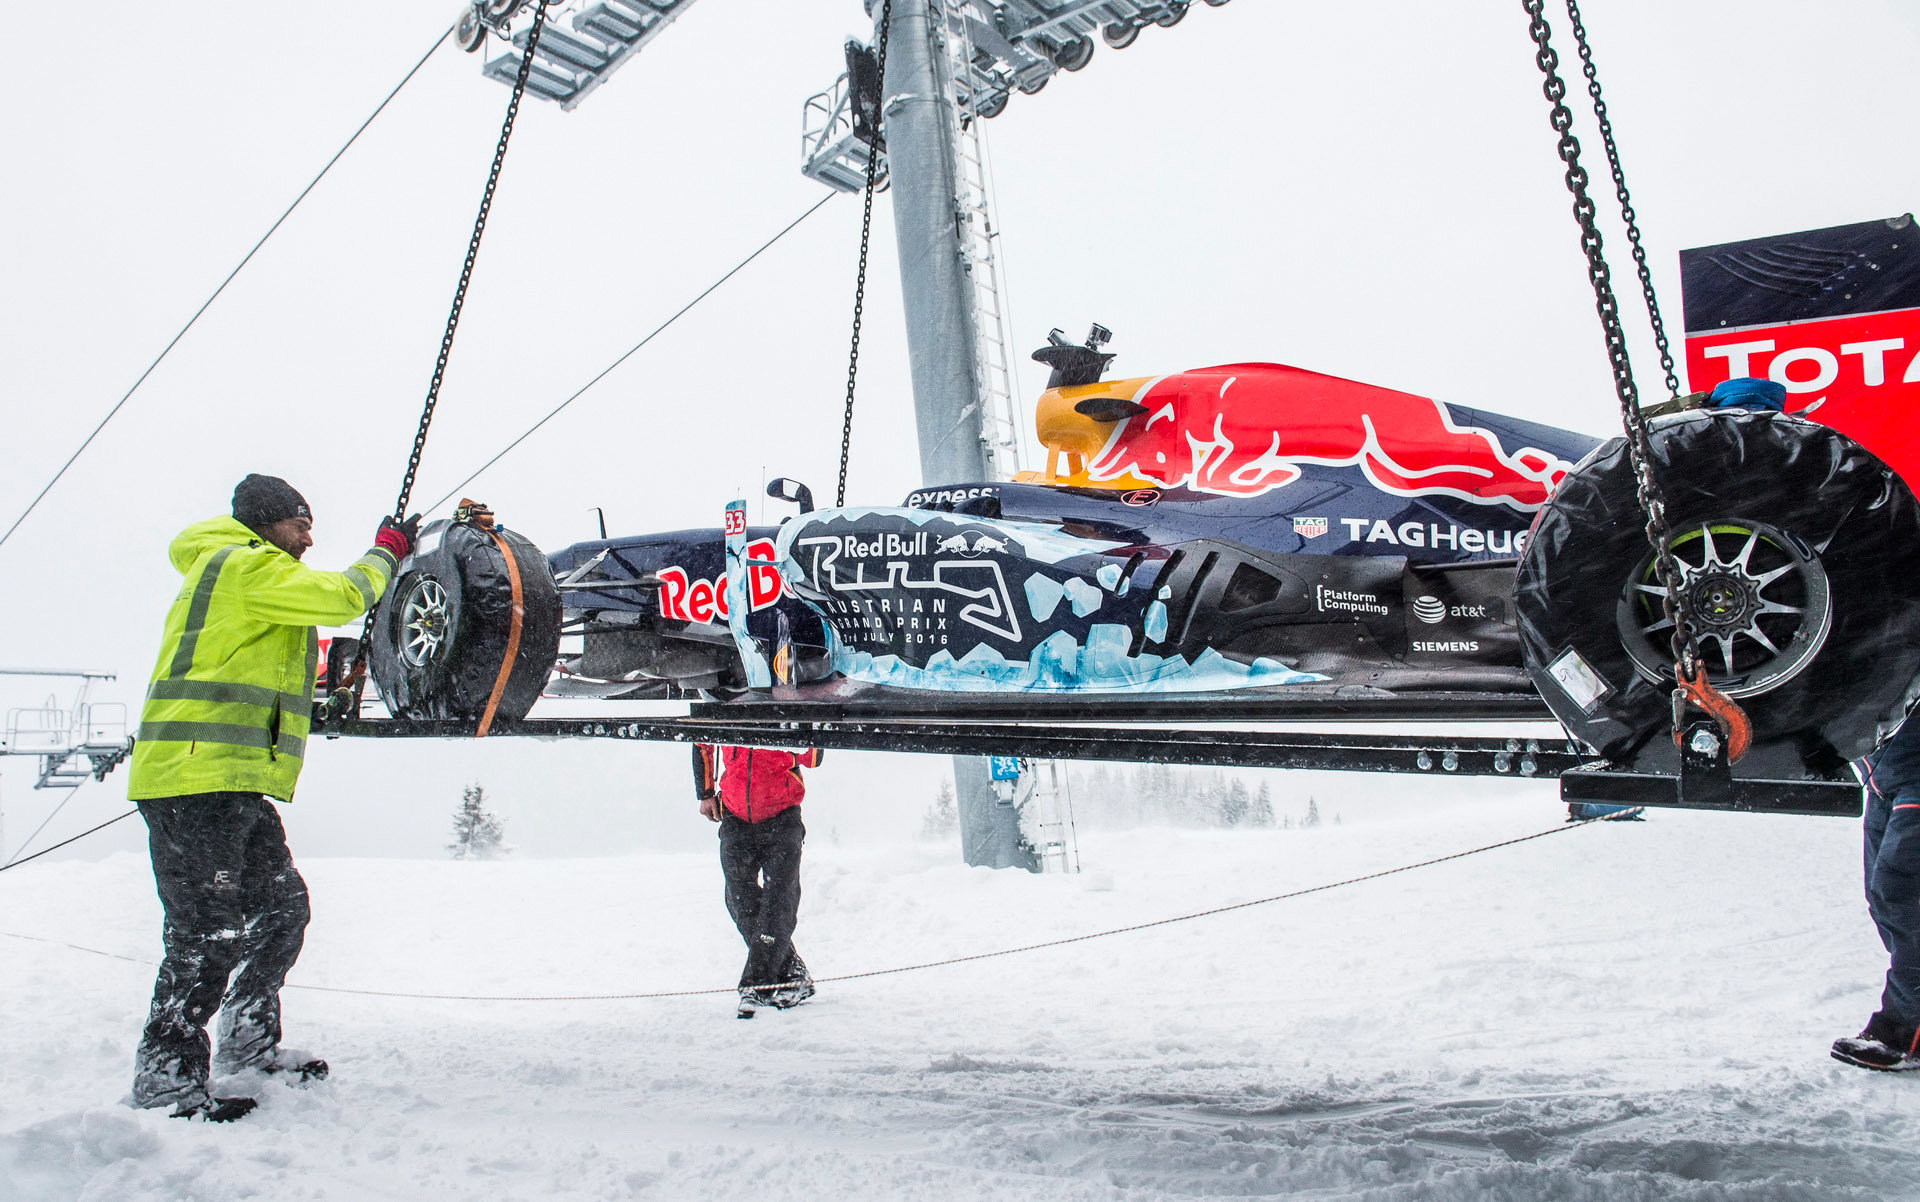 Přípravy na roadshow Red Bullu v rakouských Alpách